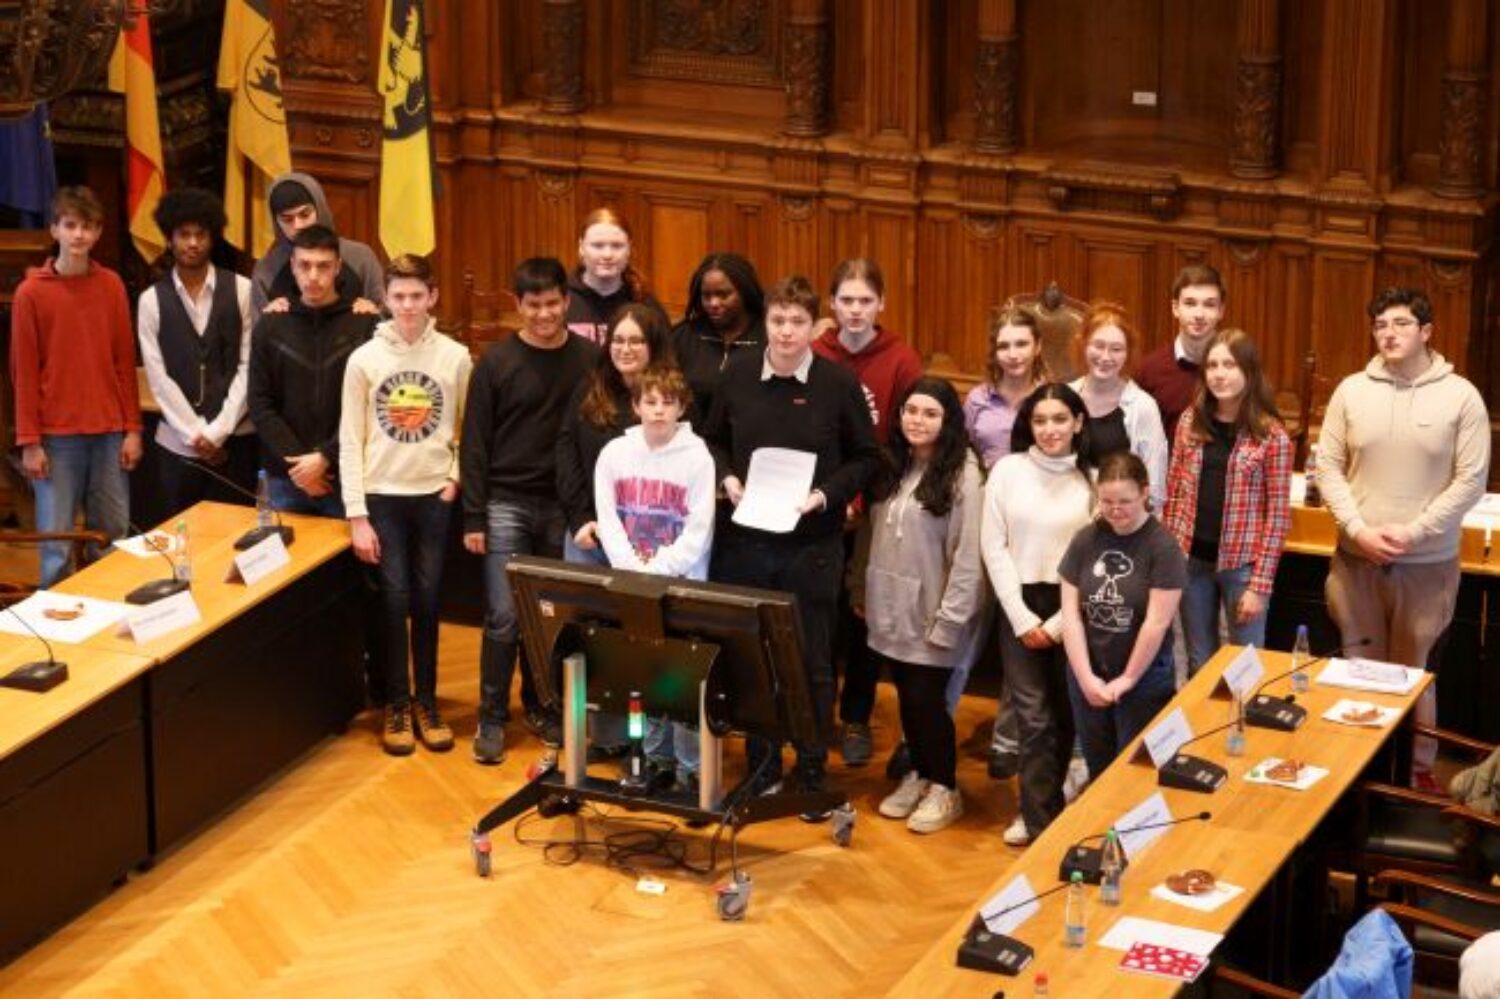 Heidelberger Jugendgemeinderat unterzeichnet „Heidelberger Erklärung für ein Zusammenleben in Vielfalt“ – Vertretung der Jugend setzt ein Zeichen für Offenheit und Toleranz